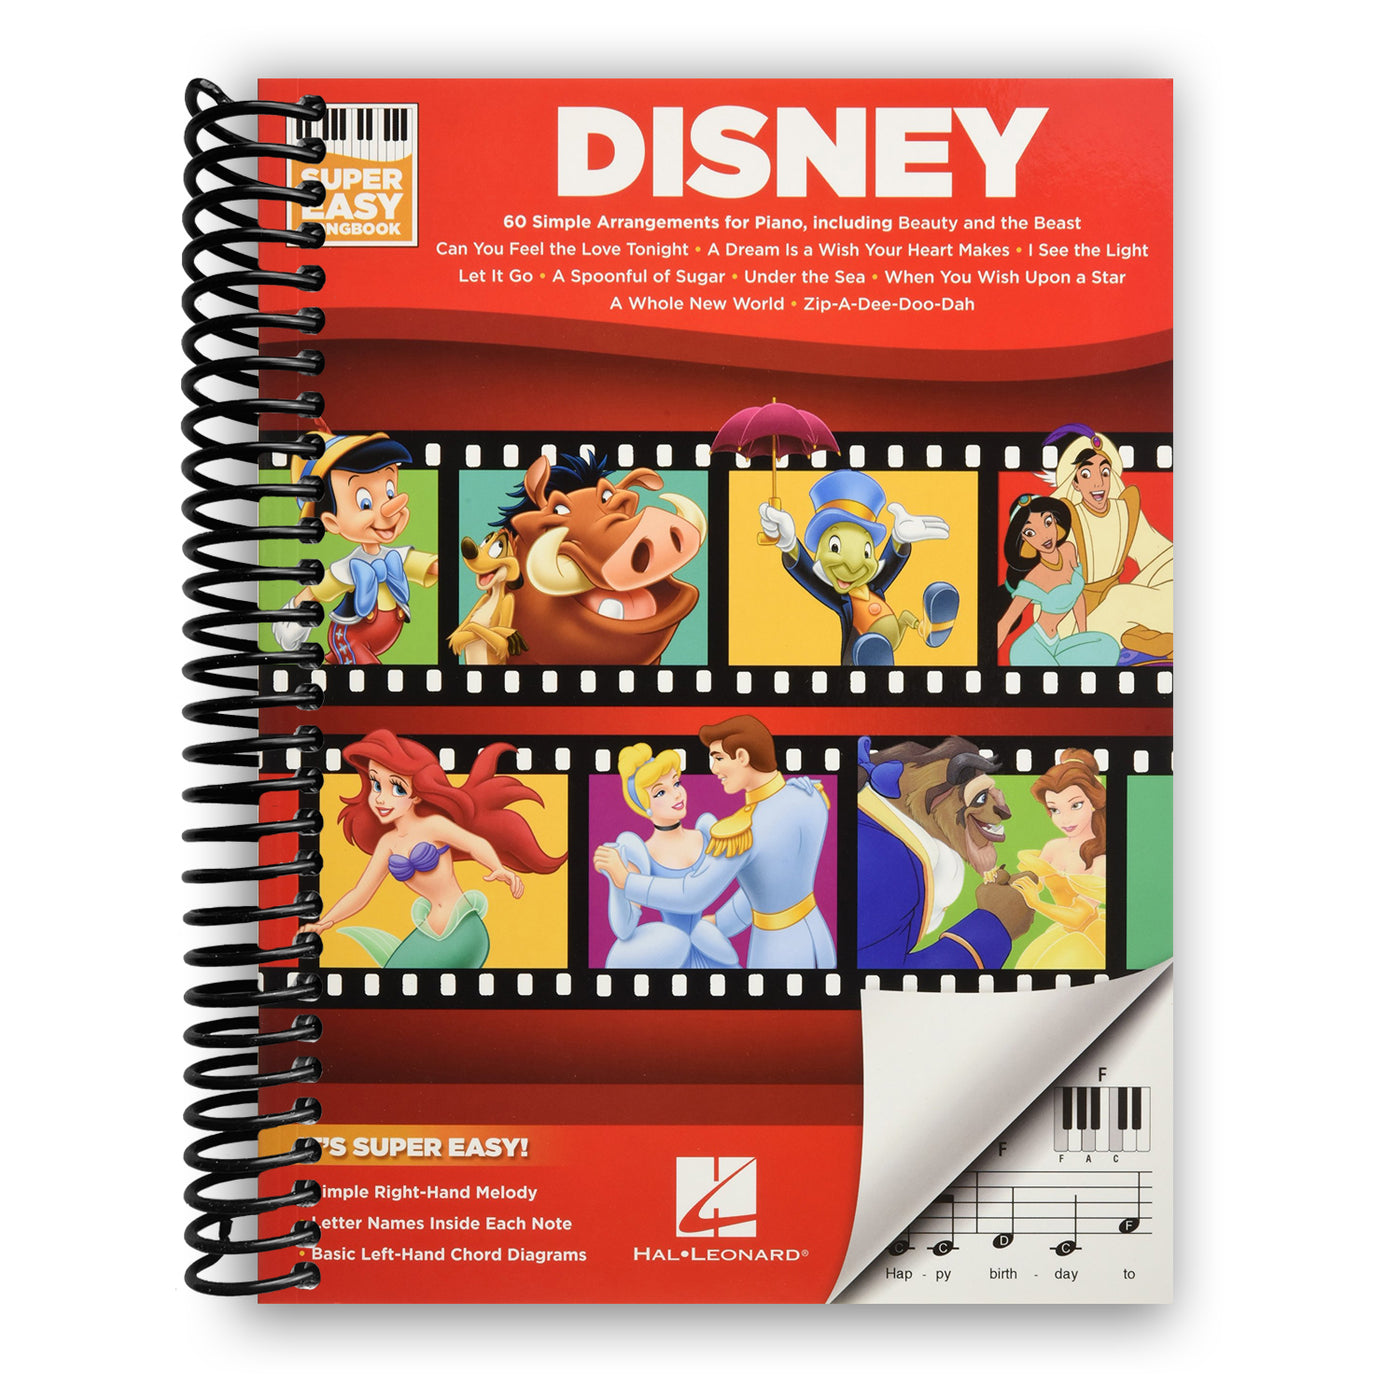 Disney - Super Easy Songbook (Spiral Bound)